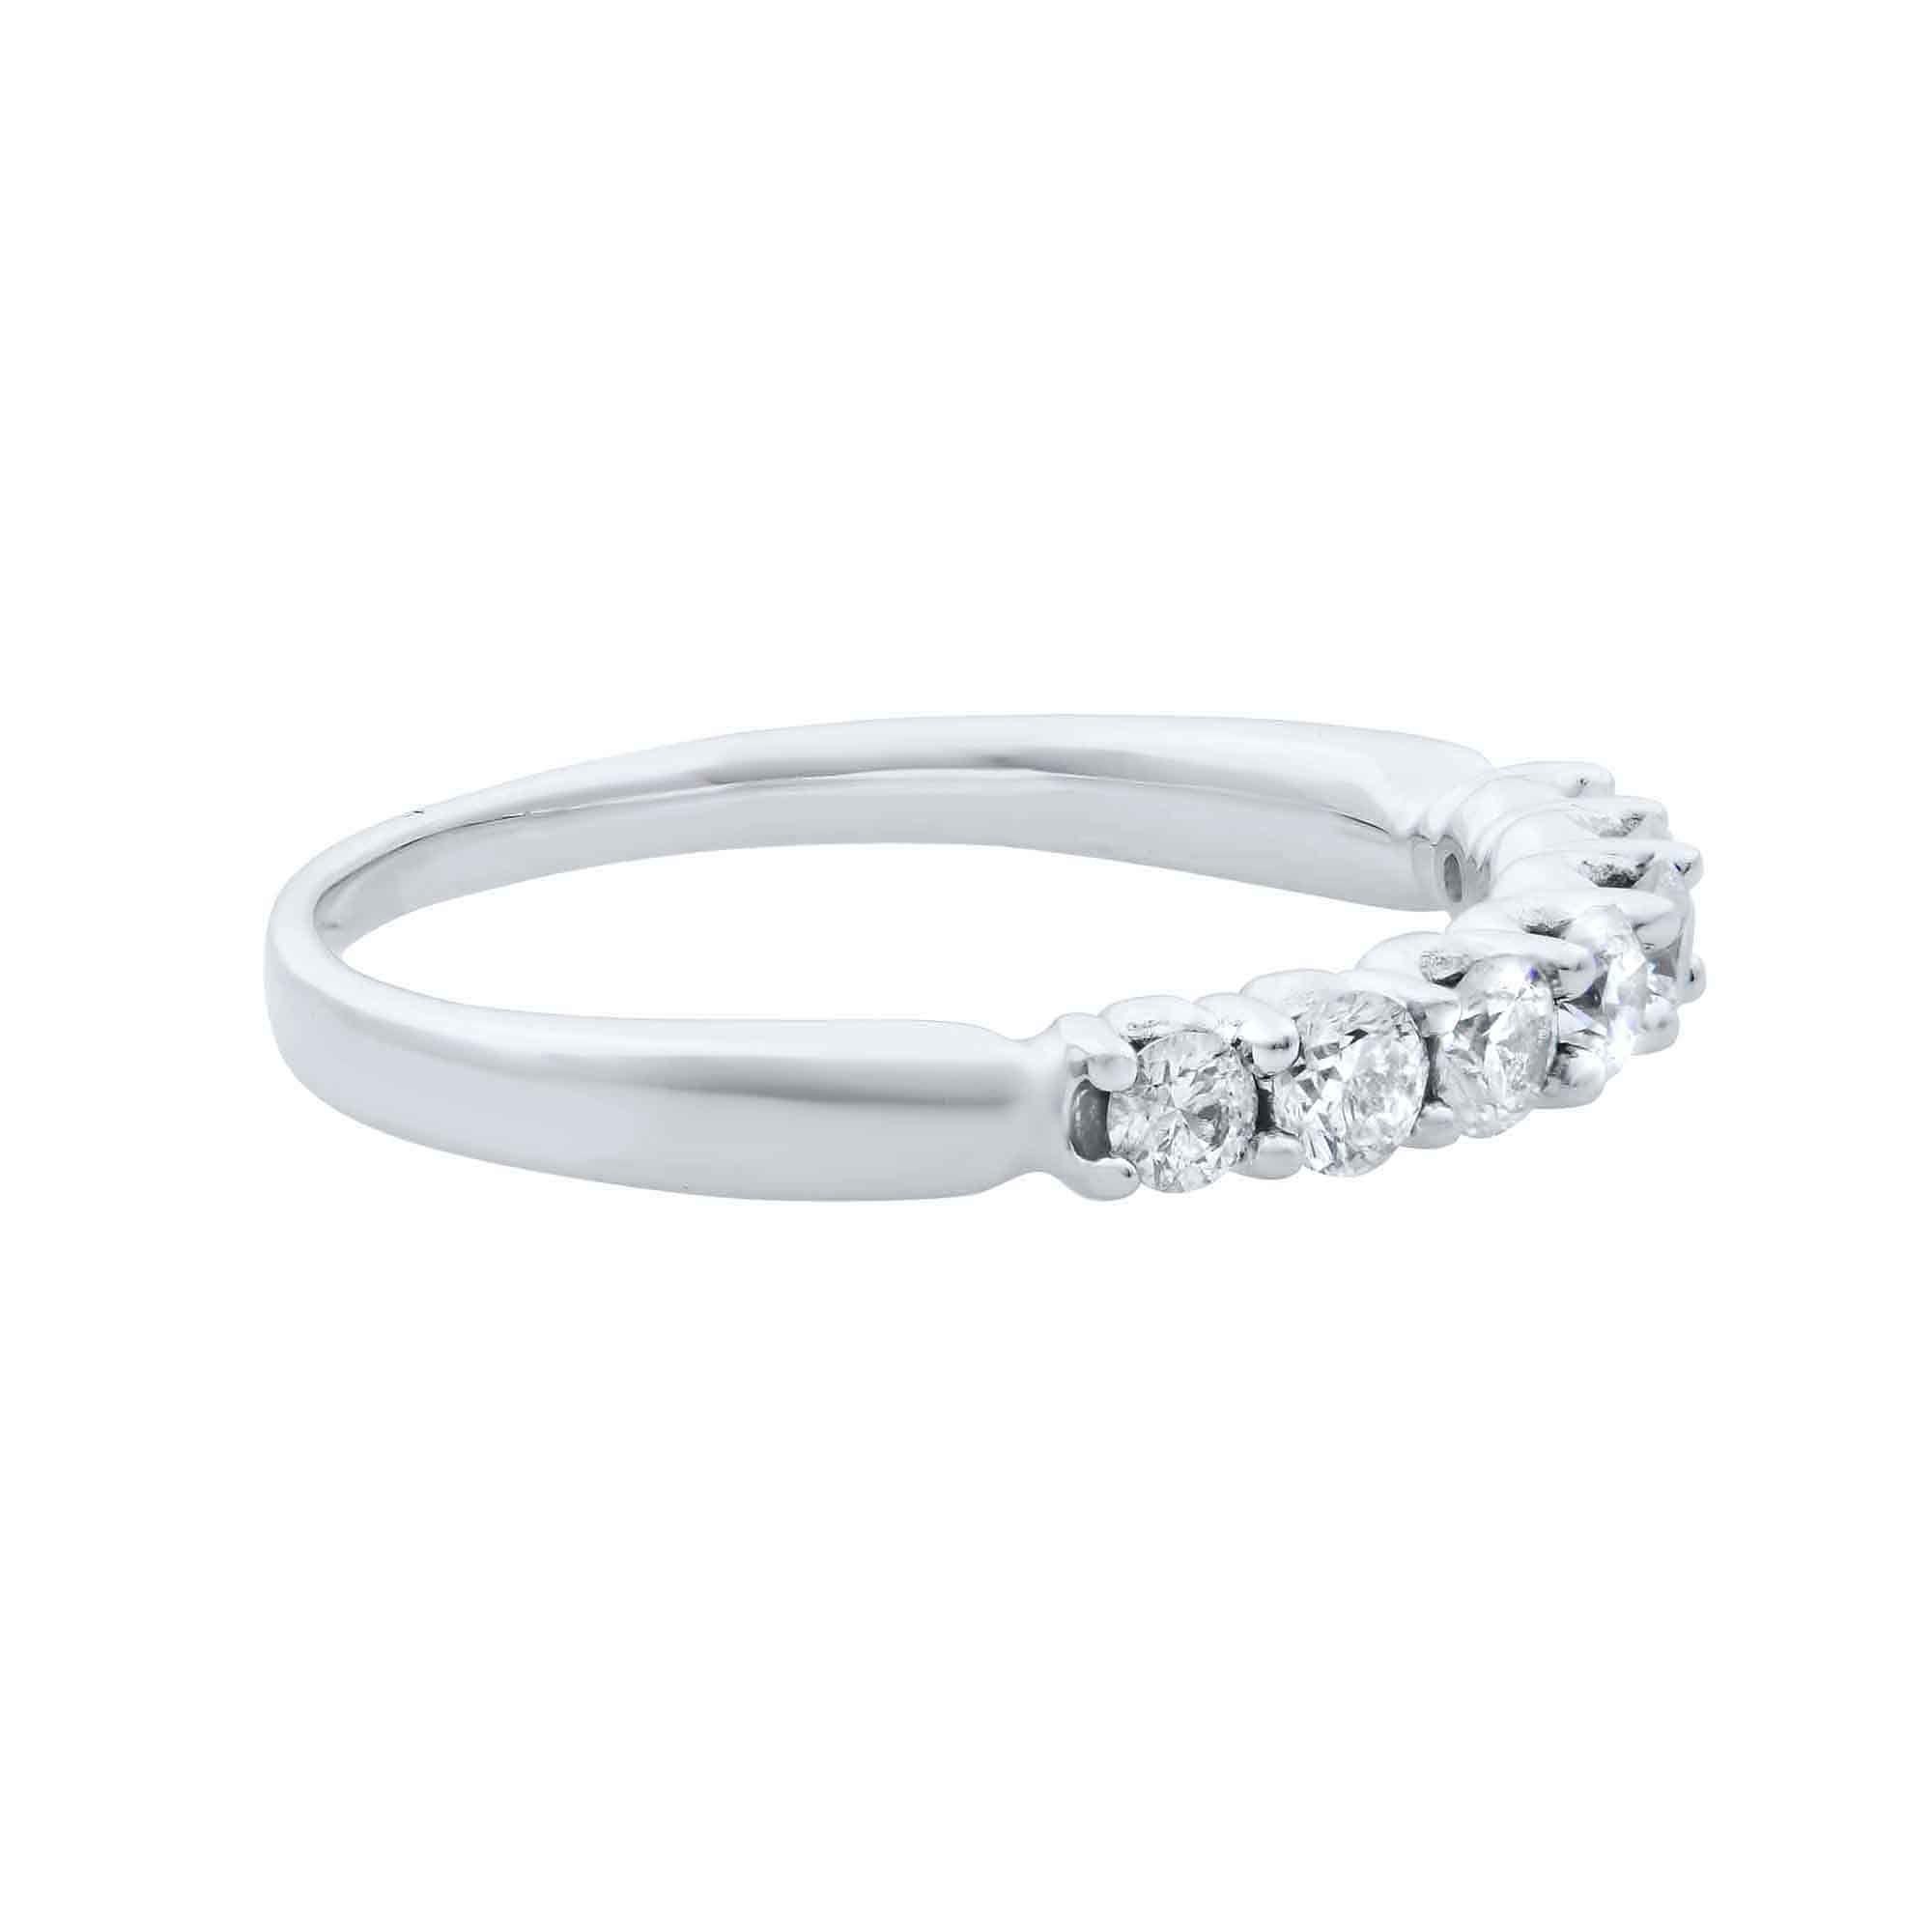 Modern Rachel Koen Diamond Wedding Band Ring 14K White Gold 0.42cttw For Sale